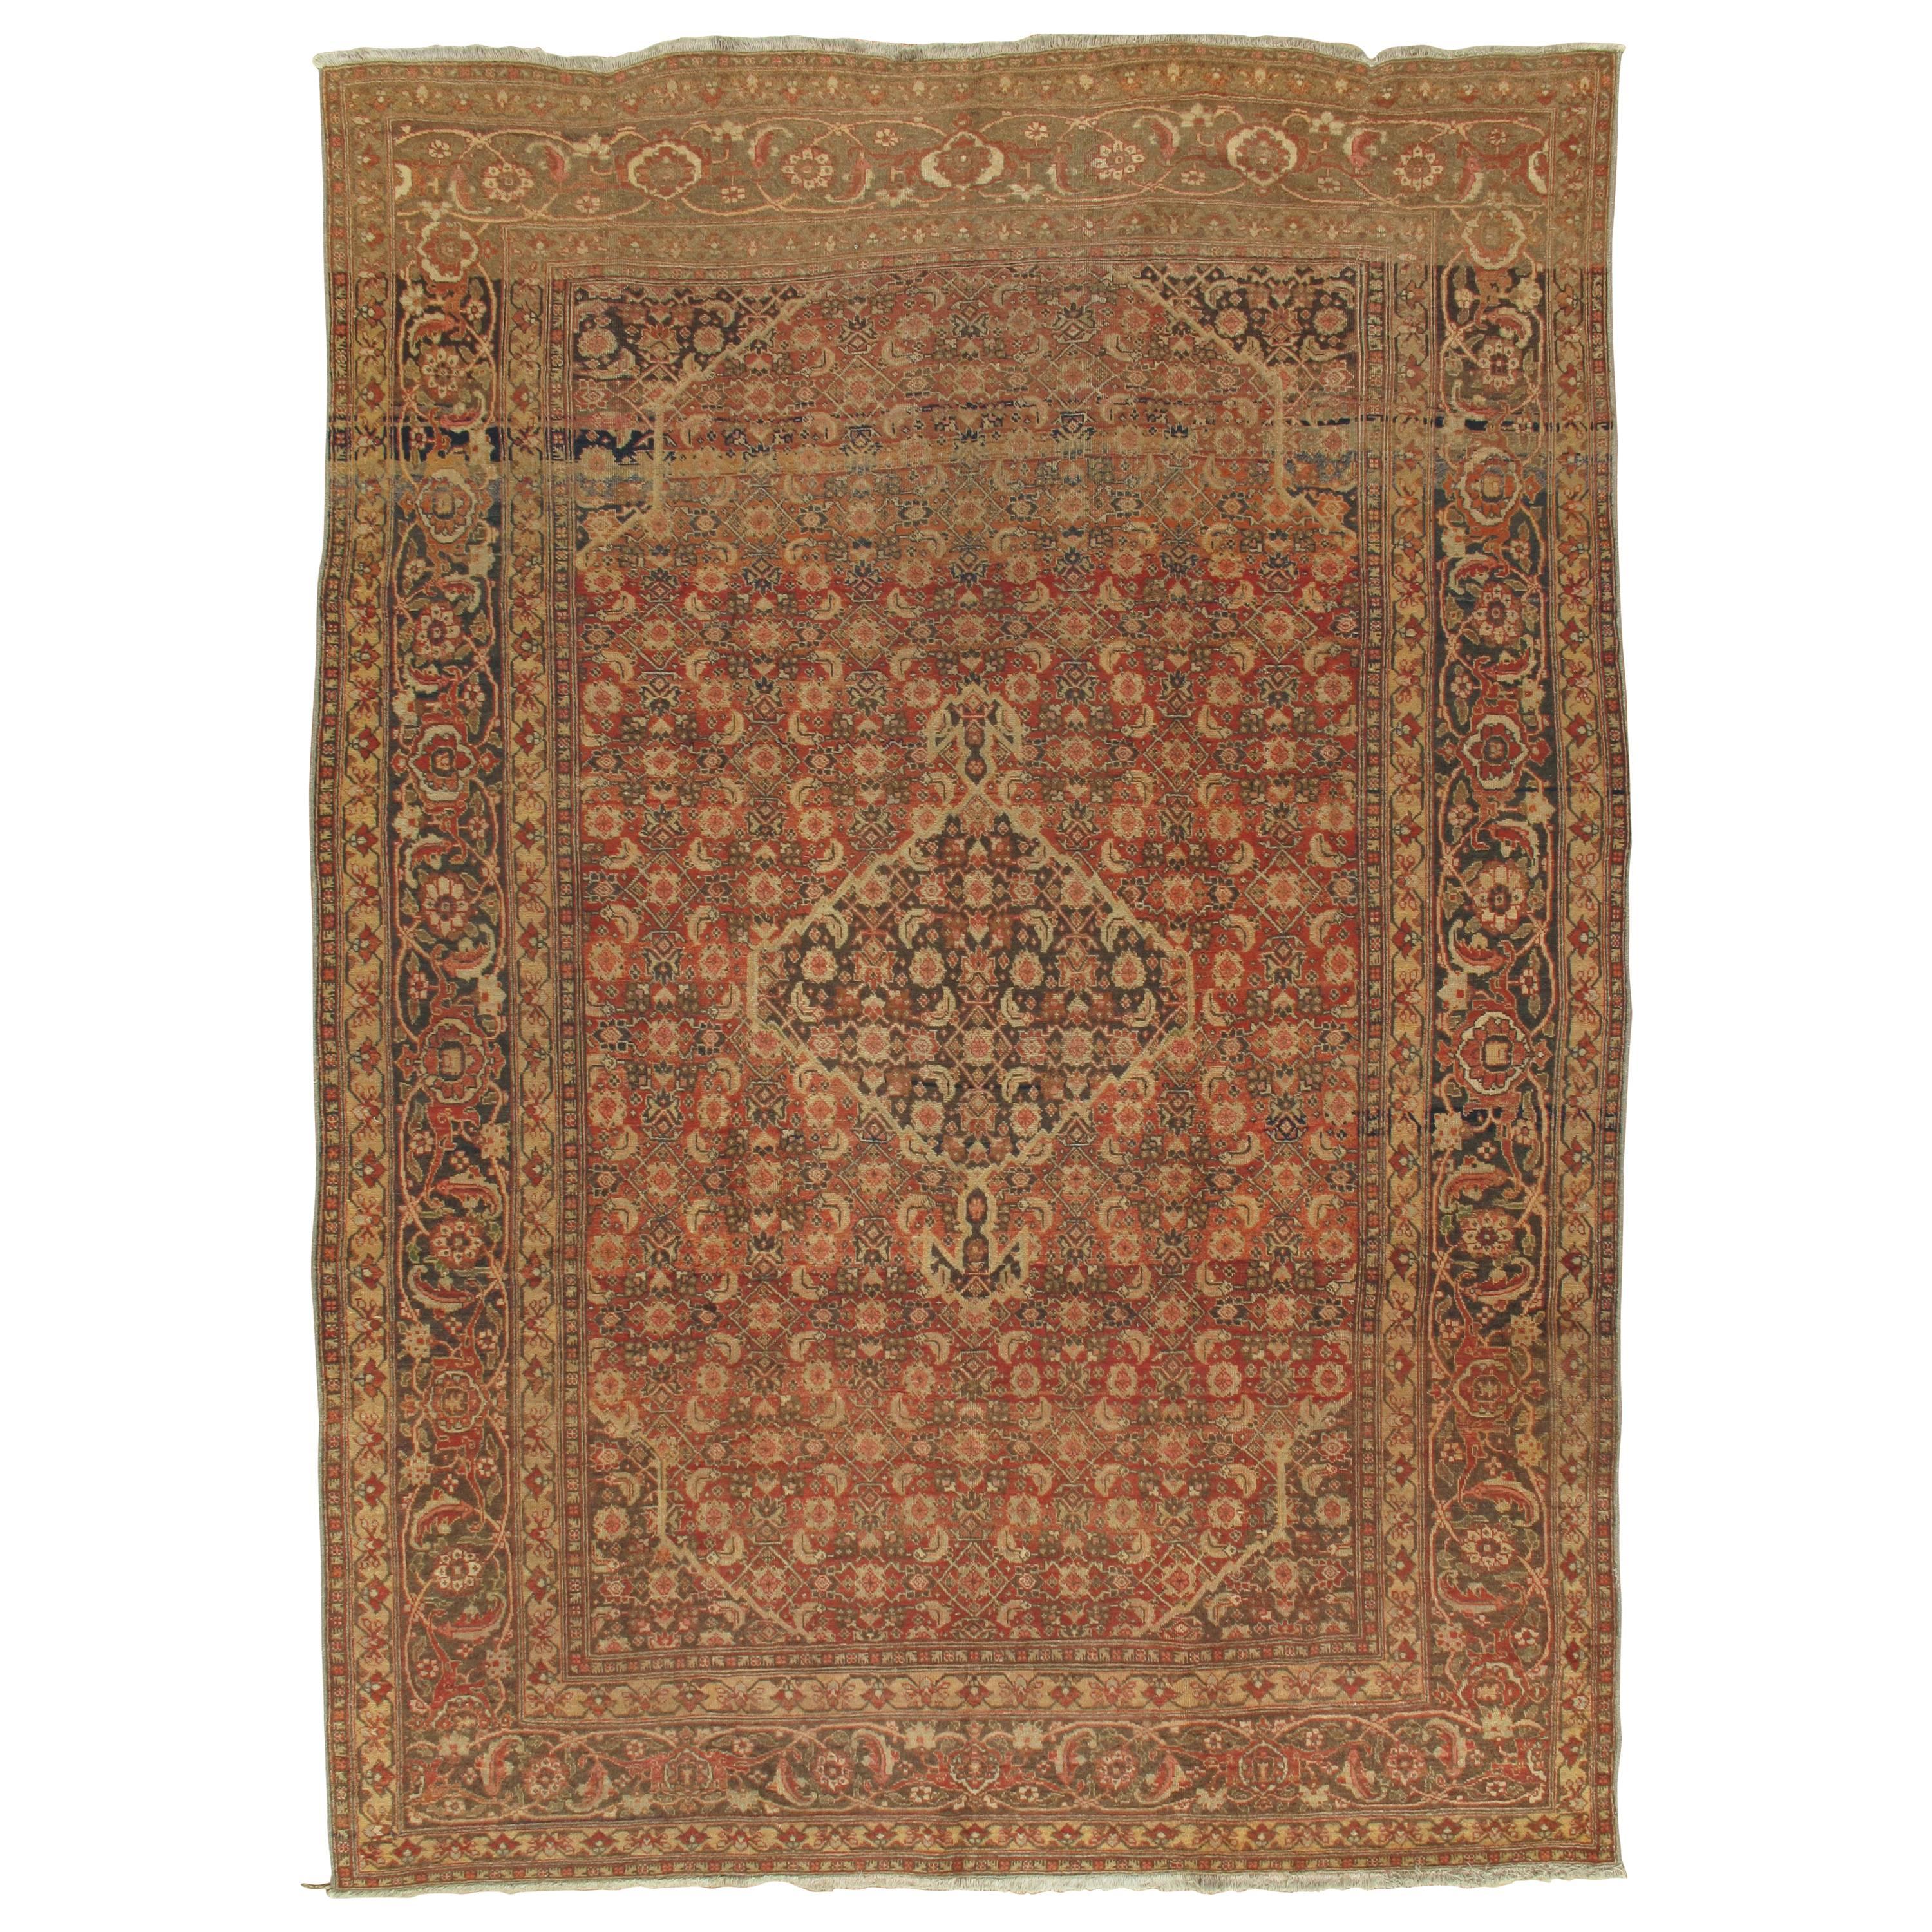 Tapis persan ancien de Tabriz, tapis oriental fait à la main, terre cuite, marron, beige